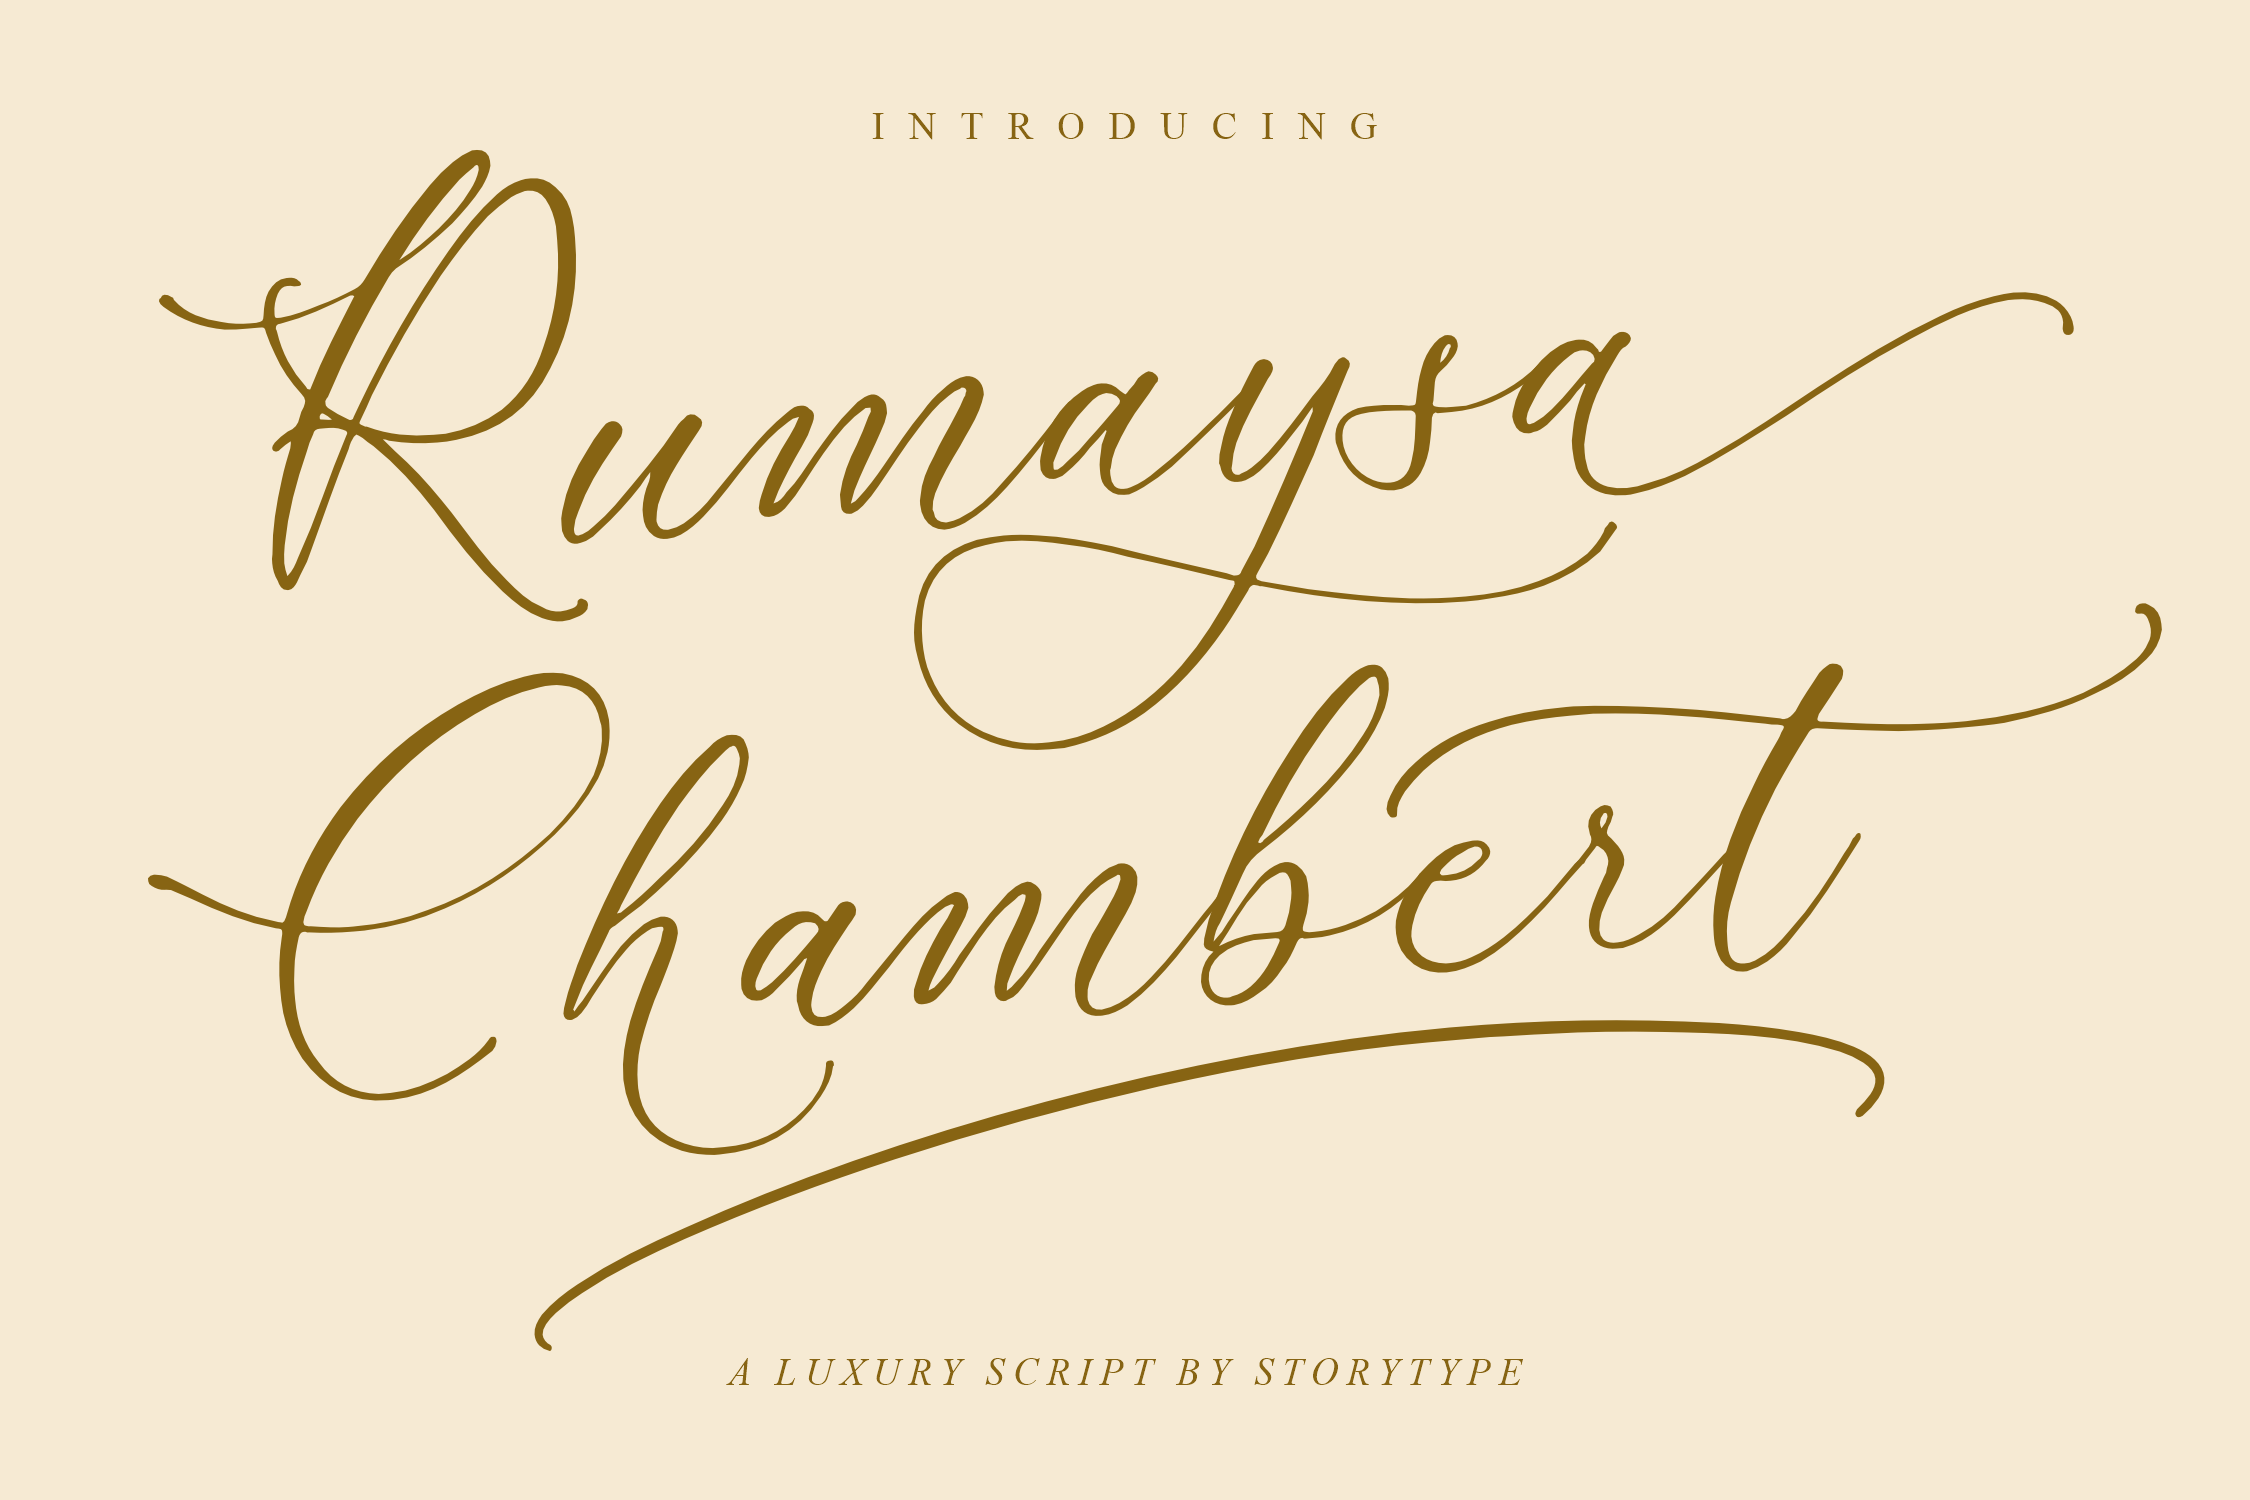 Rumaysa Chambert